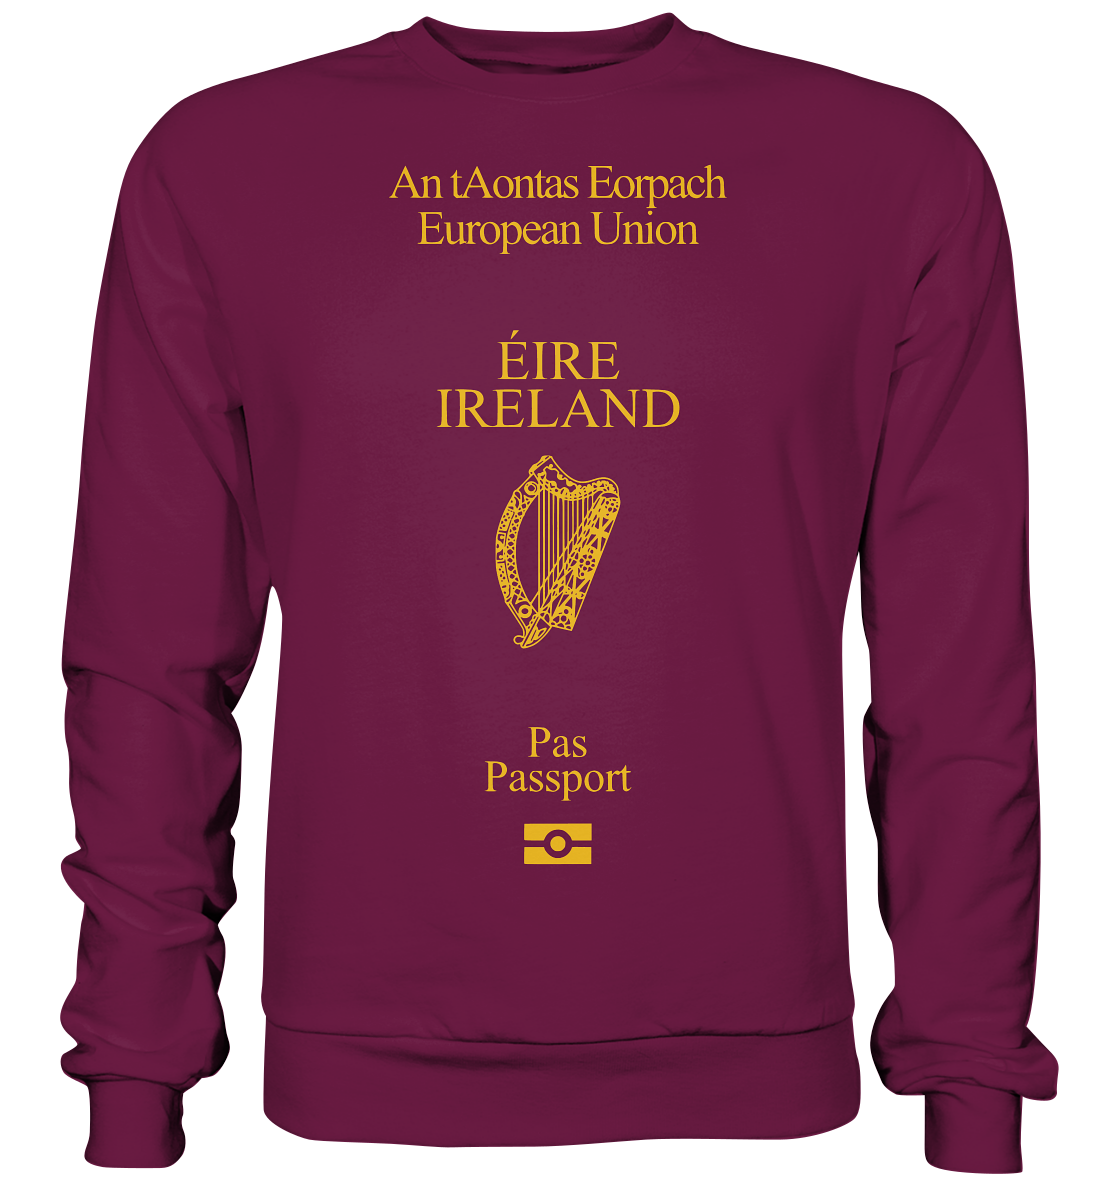 Èire / Ireland "Passport" - Premium Sweatshirt